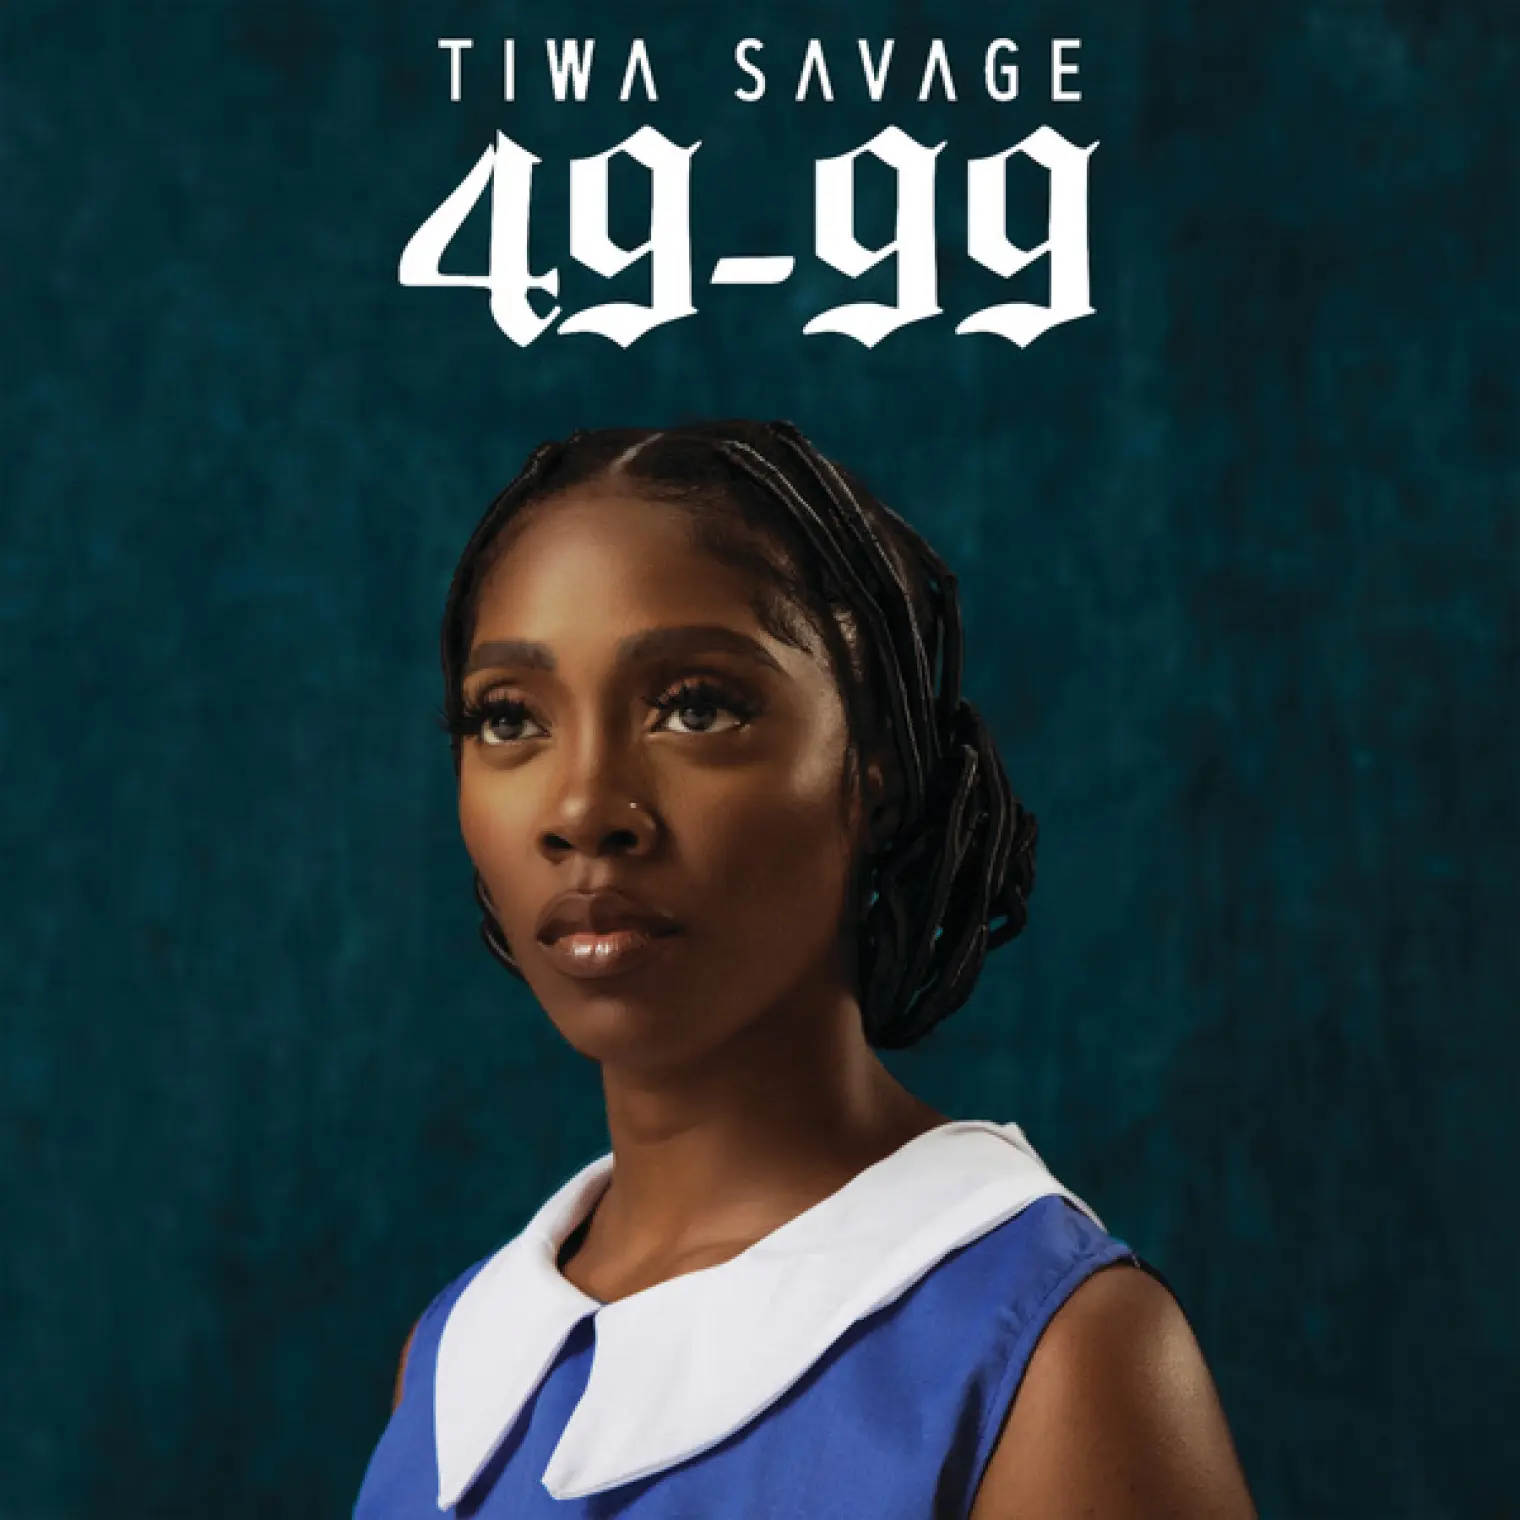 49-99 -  Tiwa Savage 